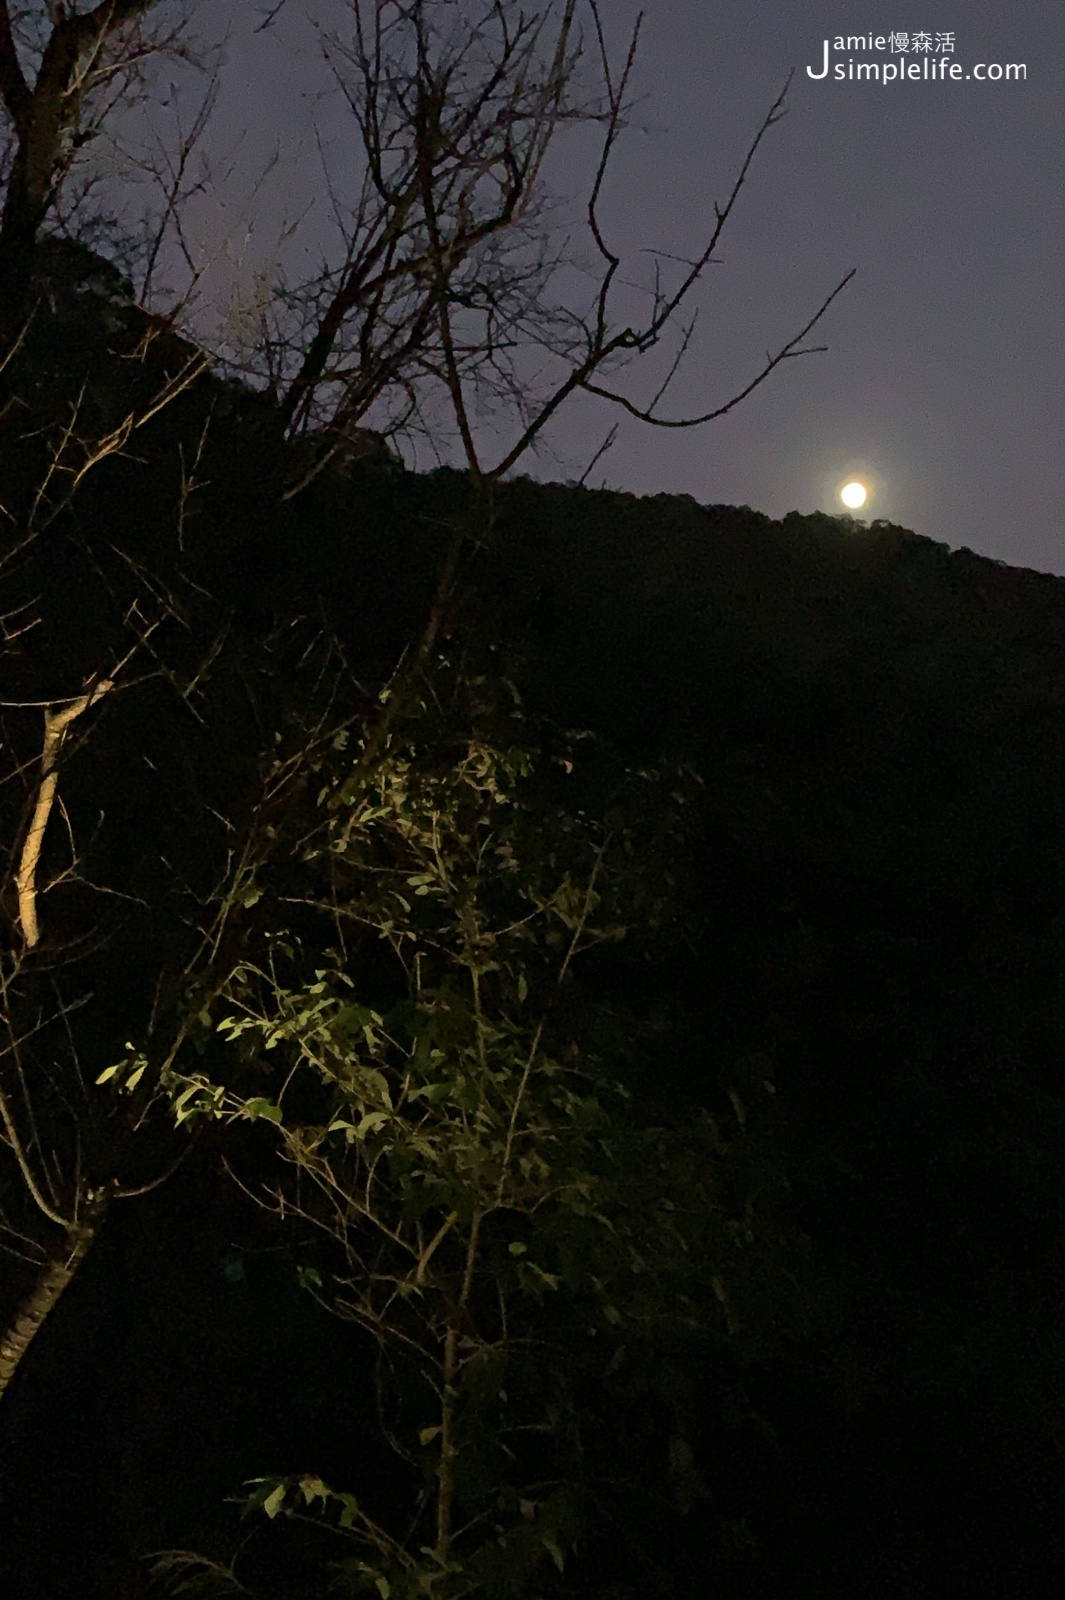 陽明山蒙馬特影像咖啡 裝飾偏甜的用餐環境與氛圍 夜晚樣子月光